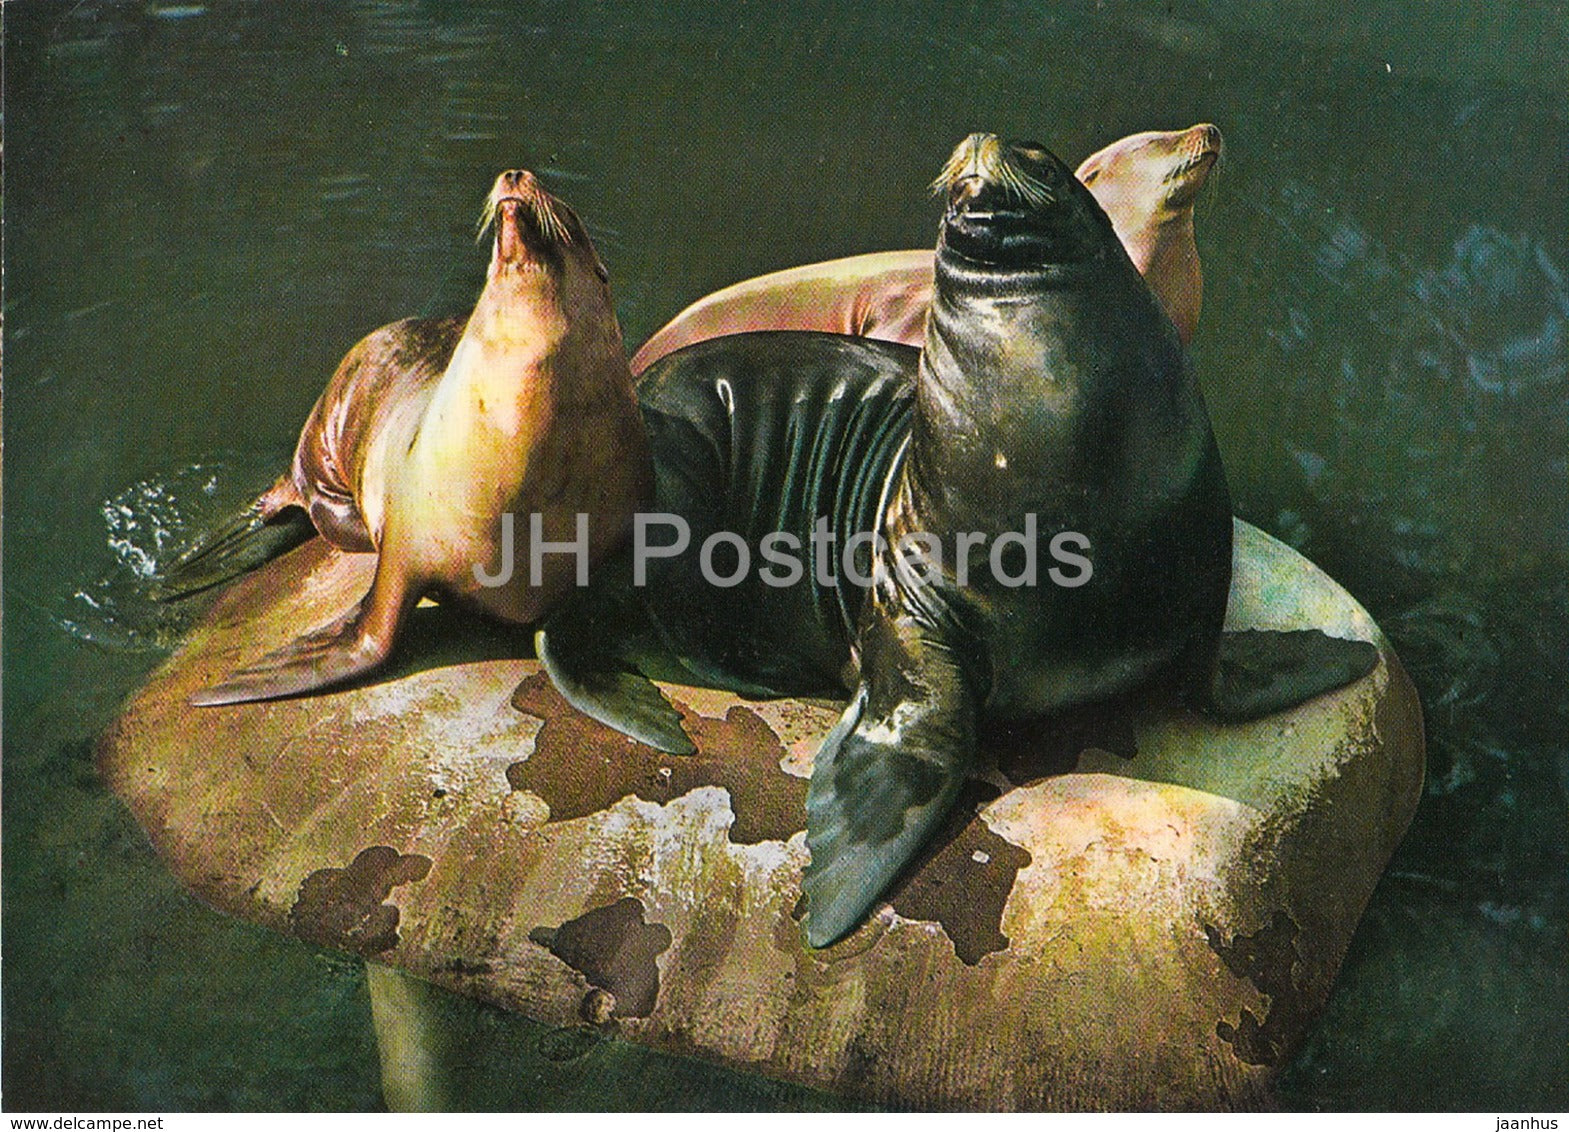 California sea lion - Zalophus californianus - Zoo - Czechoslovakia - Czech Republic - unused - JH Postcards